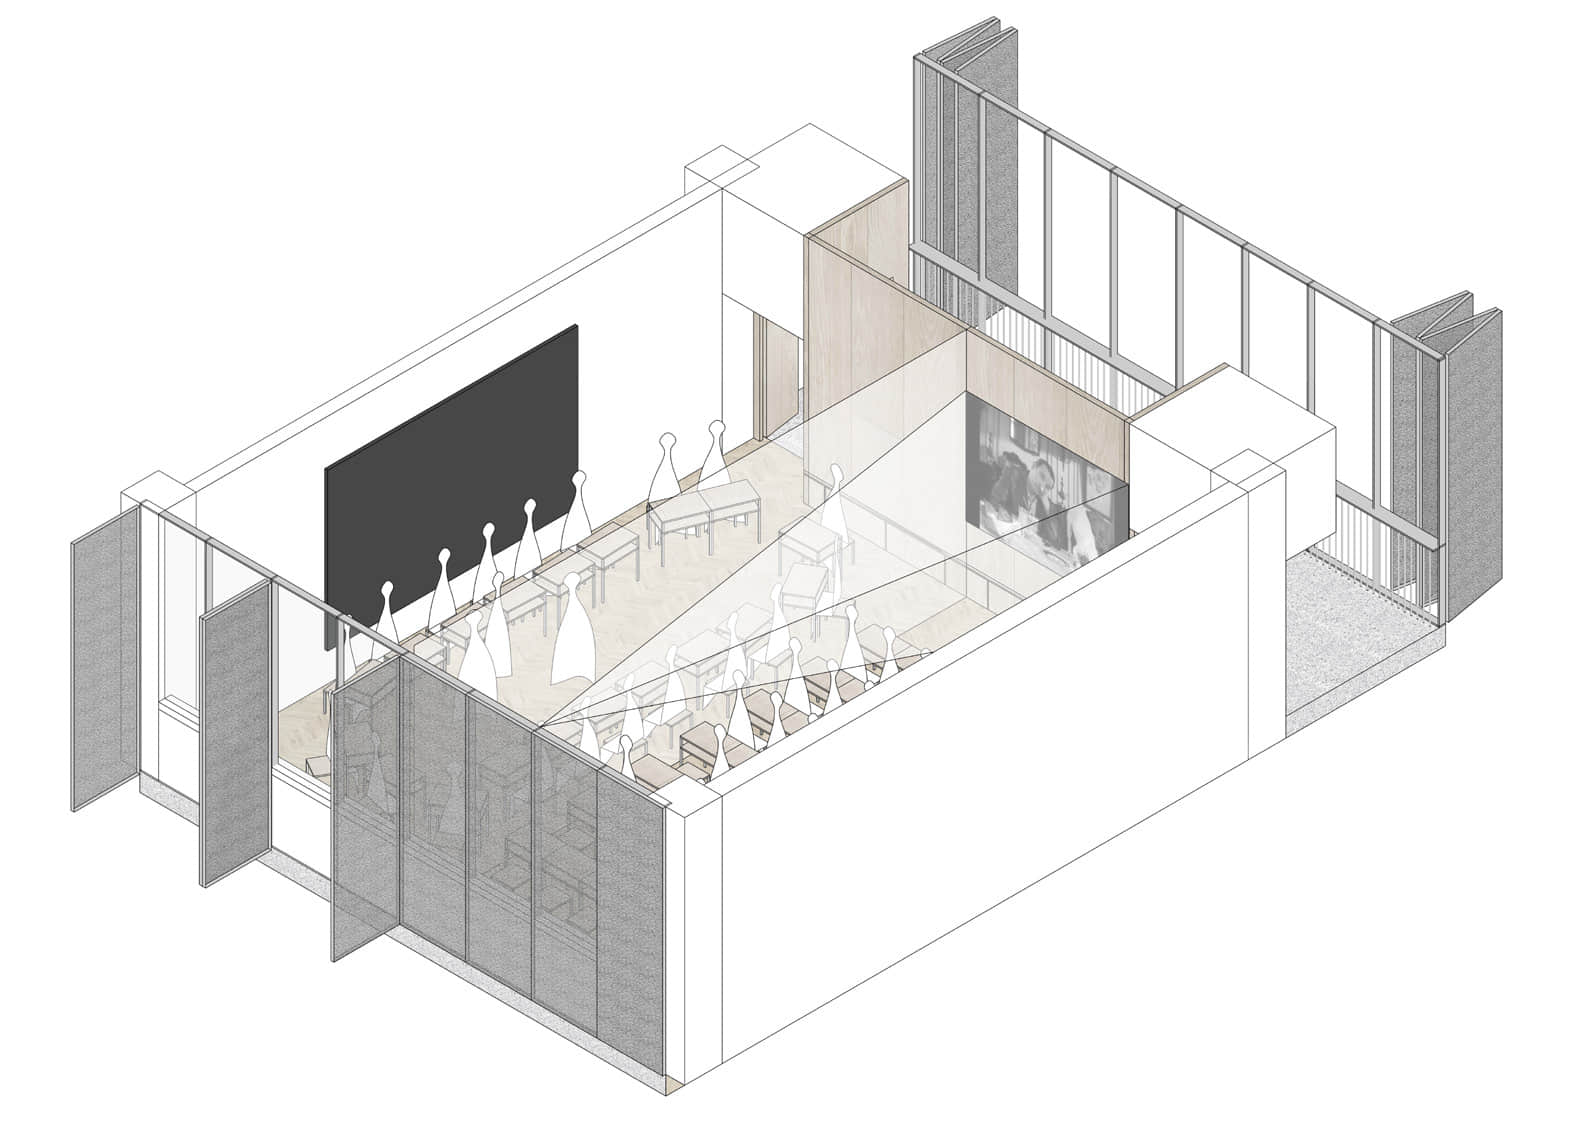 图34.分组教学场景 - 临界建筑的福田中学中标案对教室的三种使用状态的轴测示意图